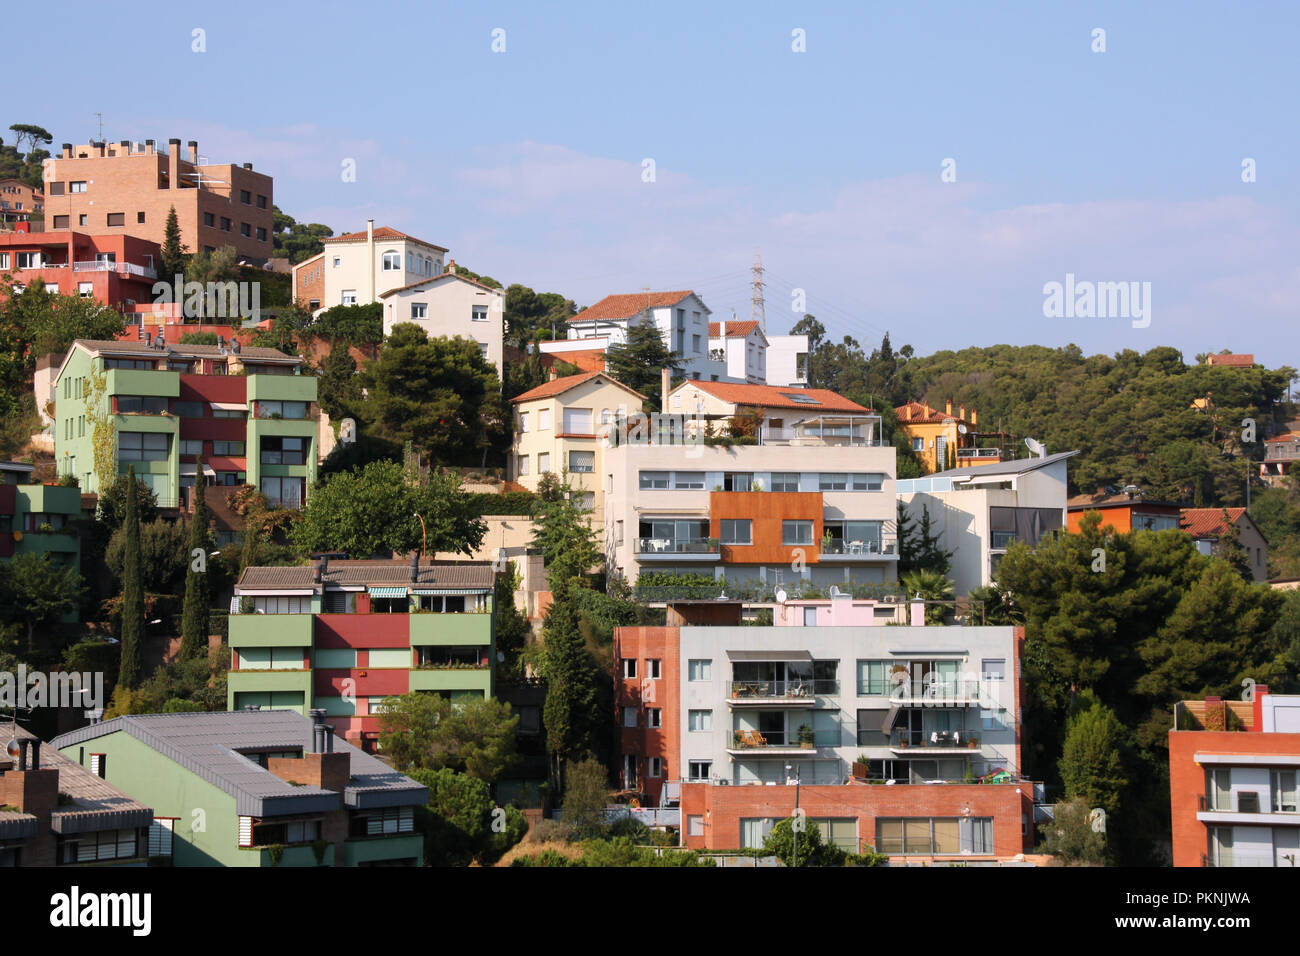 Tibidabo, Barcelone. Quartier résidentiel situé sur une colline. Maisons espagnoles. Banque D'Images